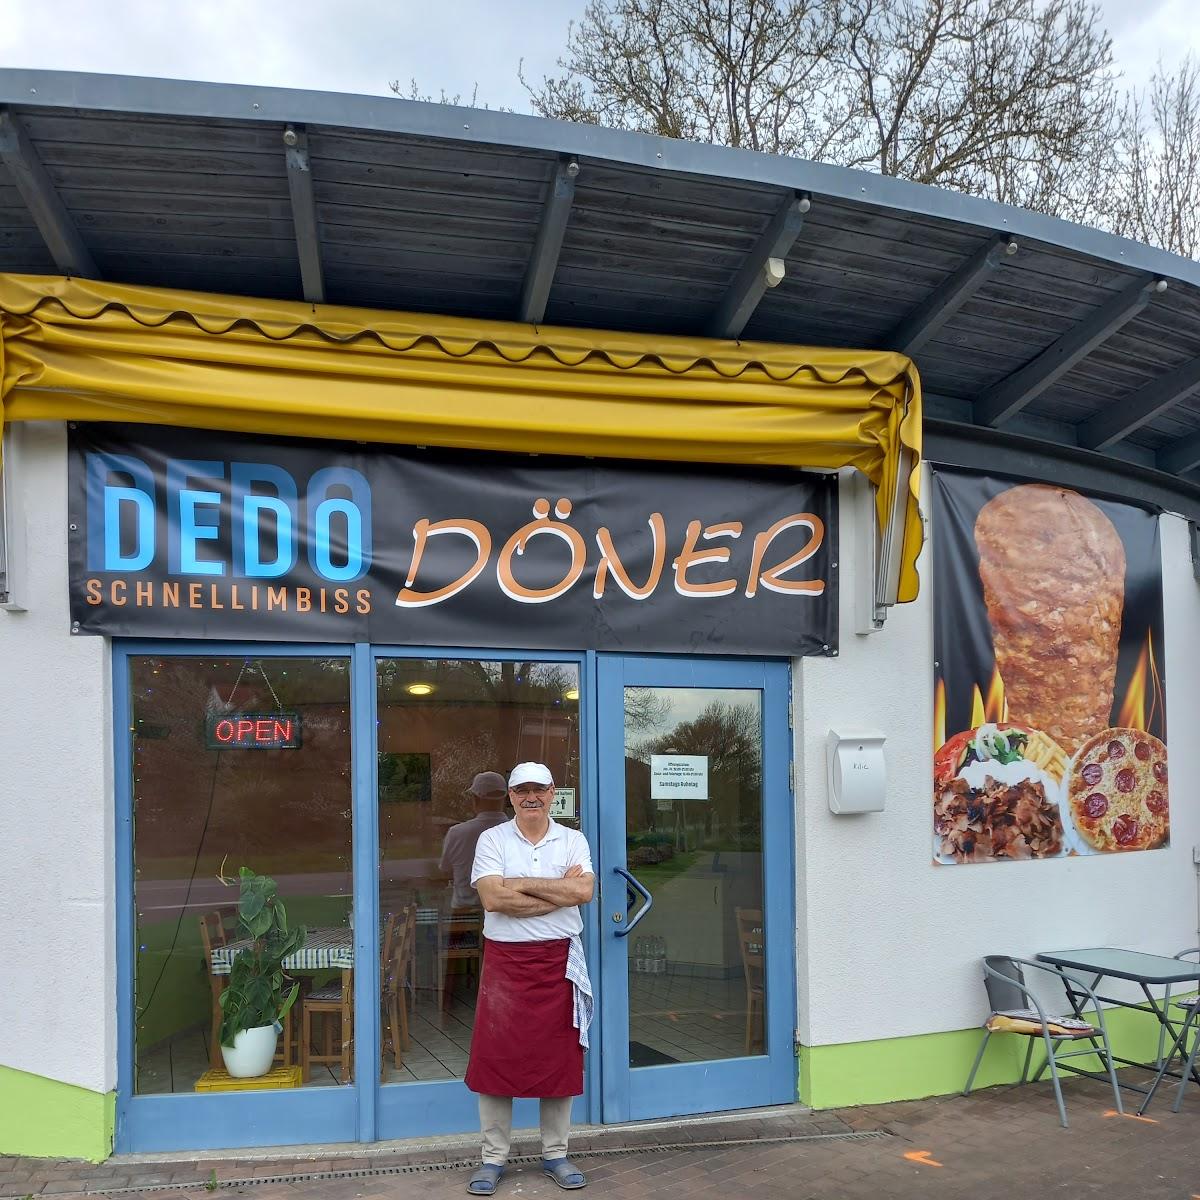 Restaurant "Dedo Schnellimbiss" in Jesberg